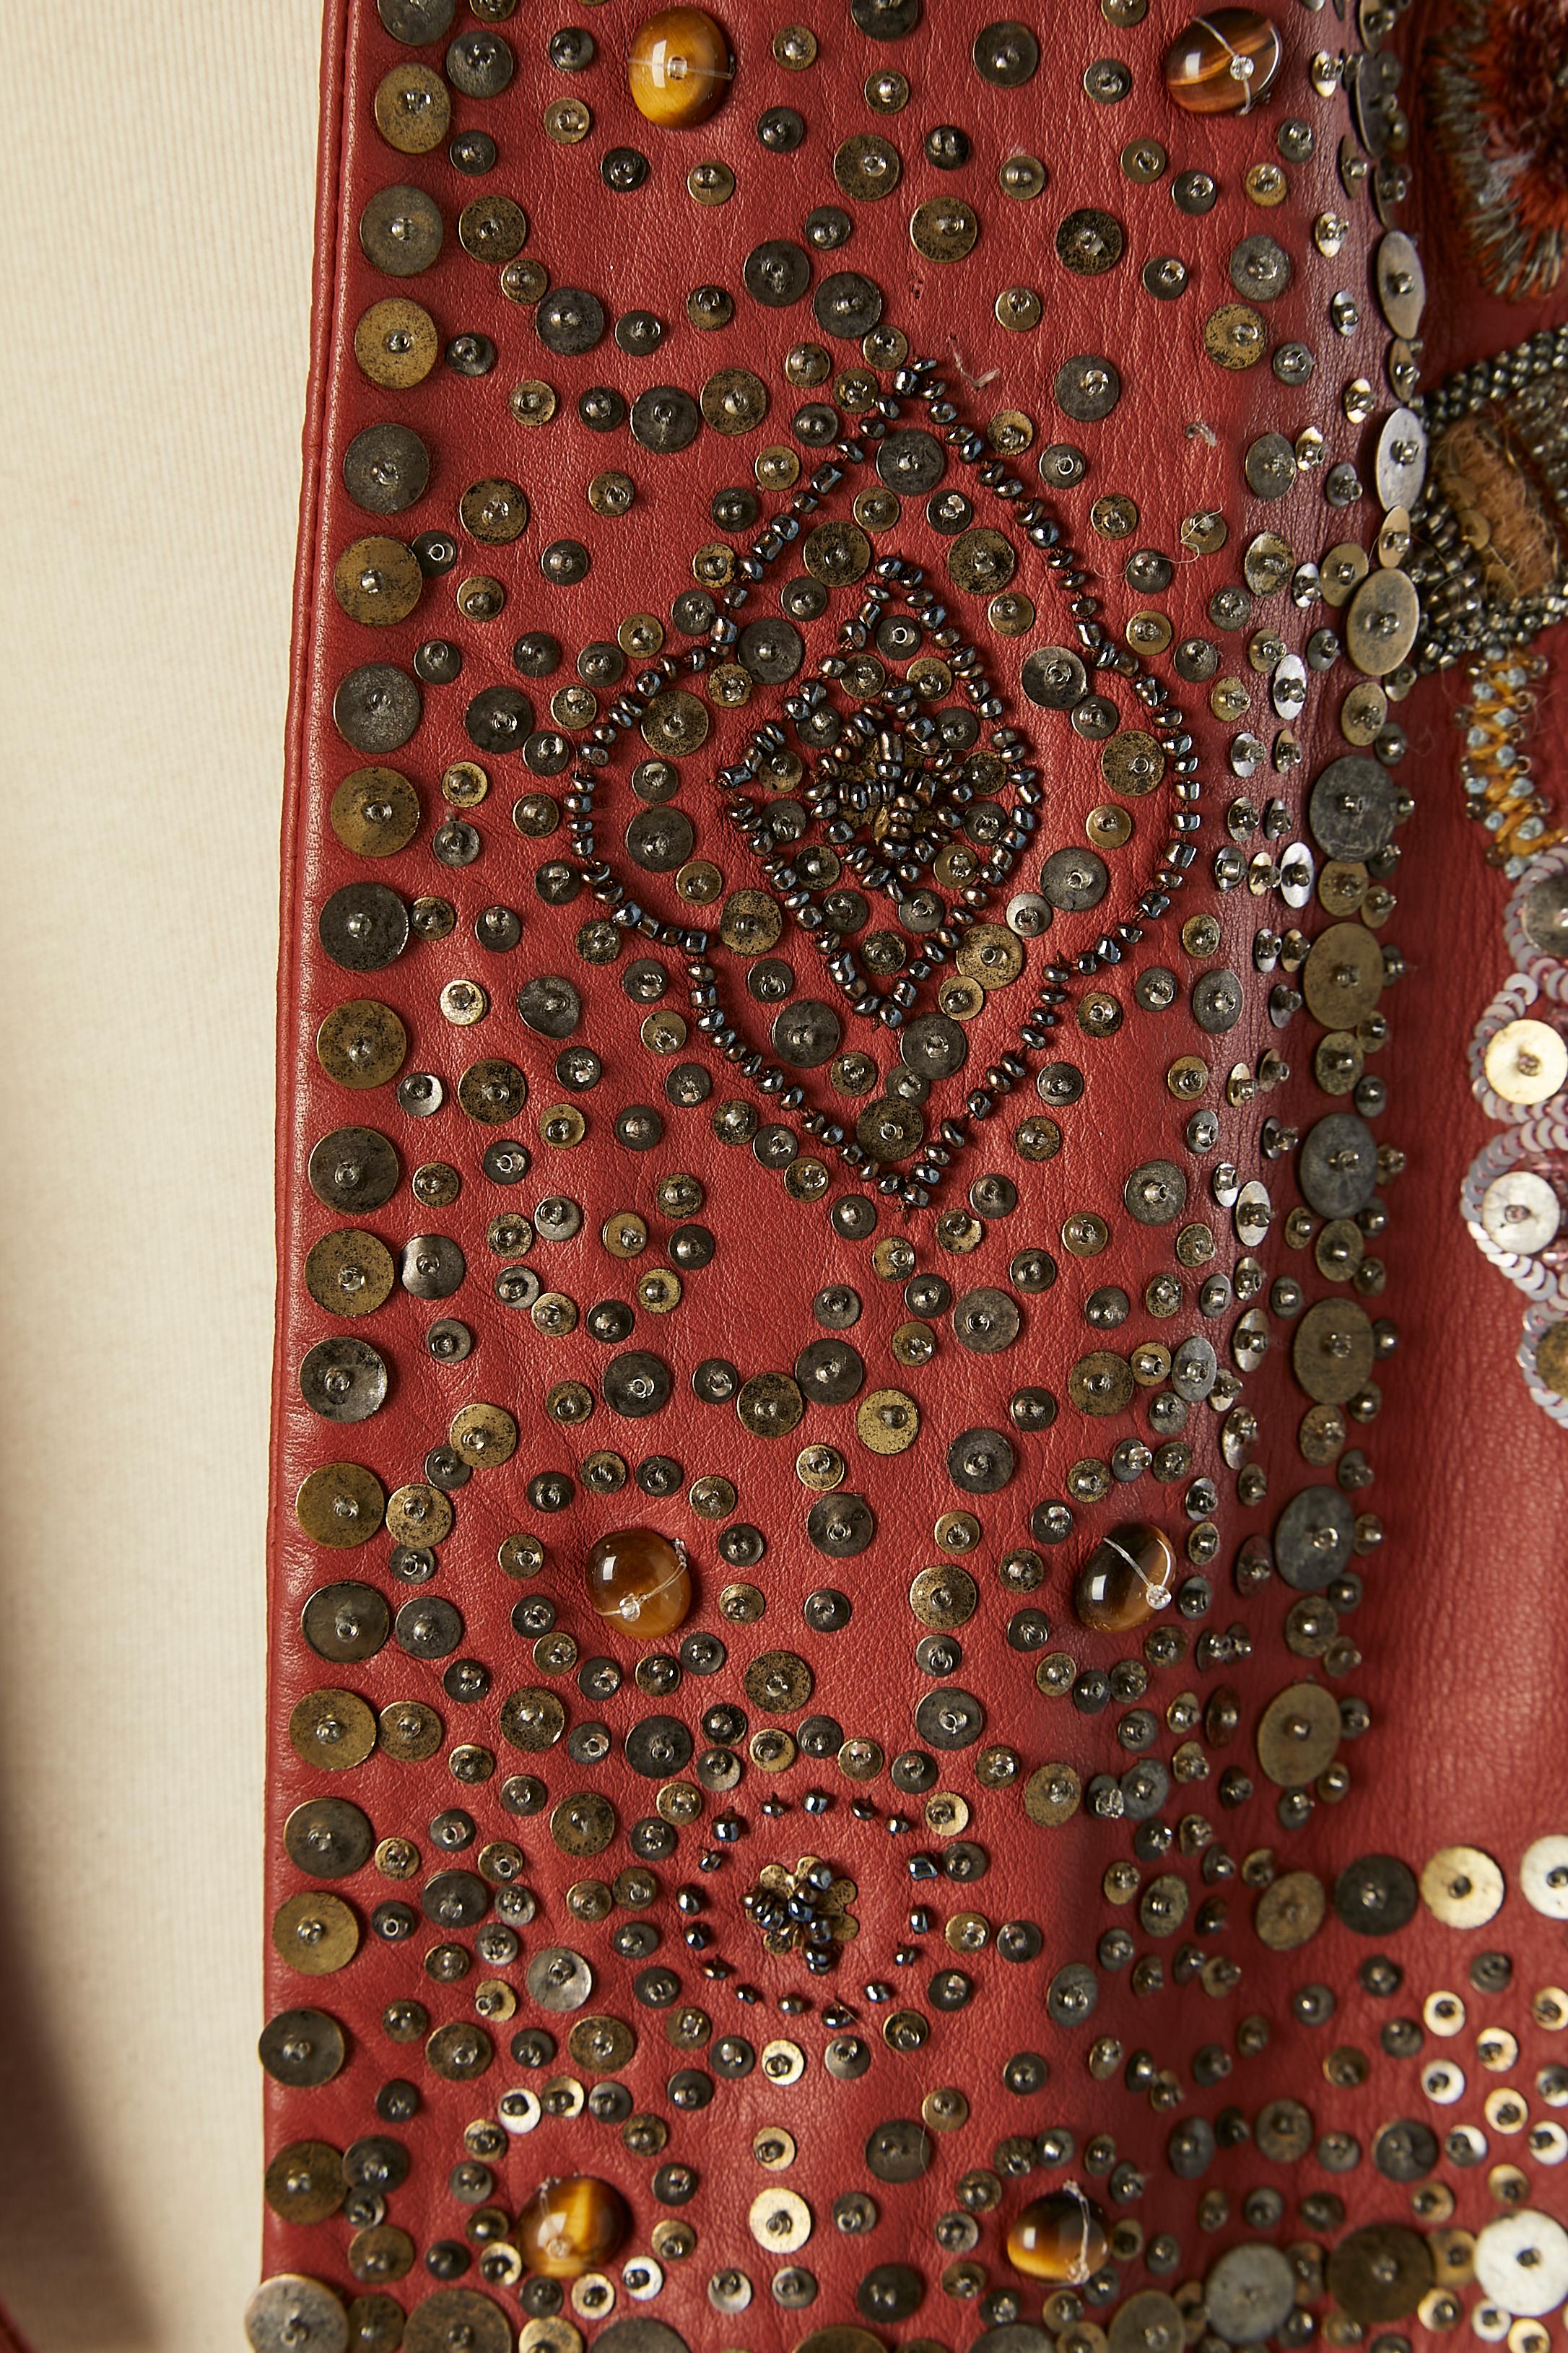 Veste en cuir marron brodée bord à bord avec un travail perlé (perles, paillettes et fil de soie) Doublure en acétate marron. Travail de coupe sur les épaules 
TAILLE 8 